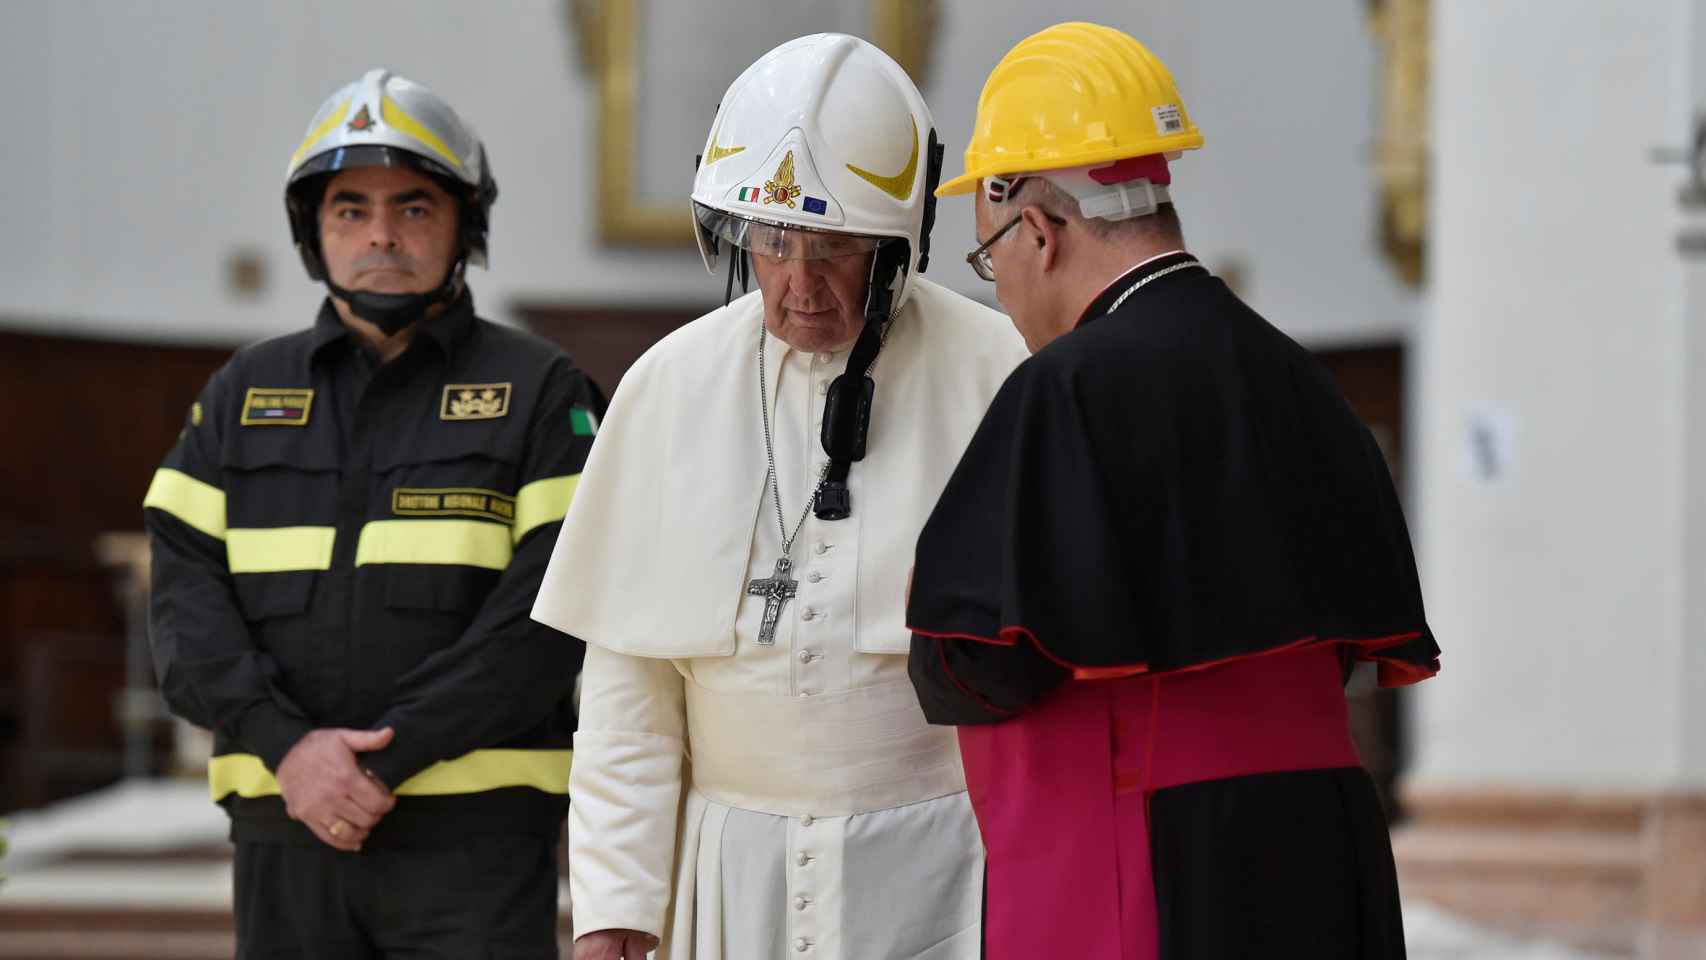 El Papa en su visita a Camerino, localidad parcialmente destruida por el terremoto de 2016 en Italia.